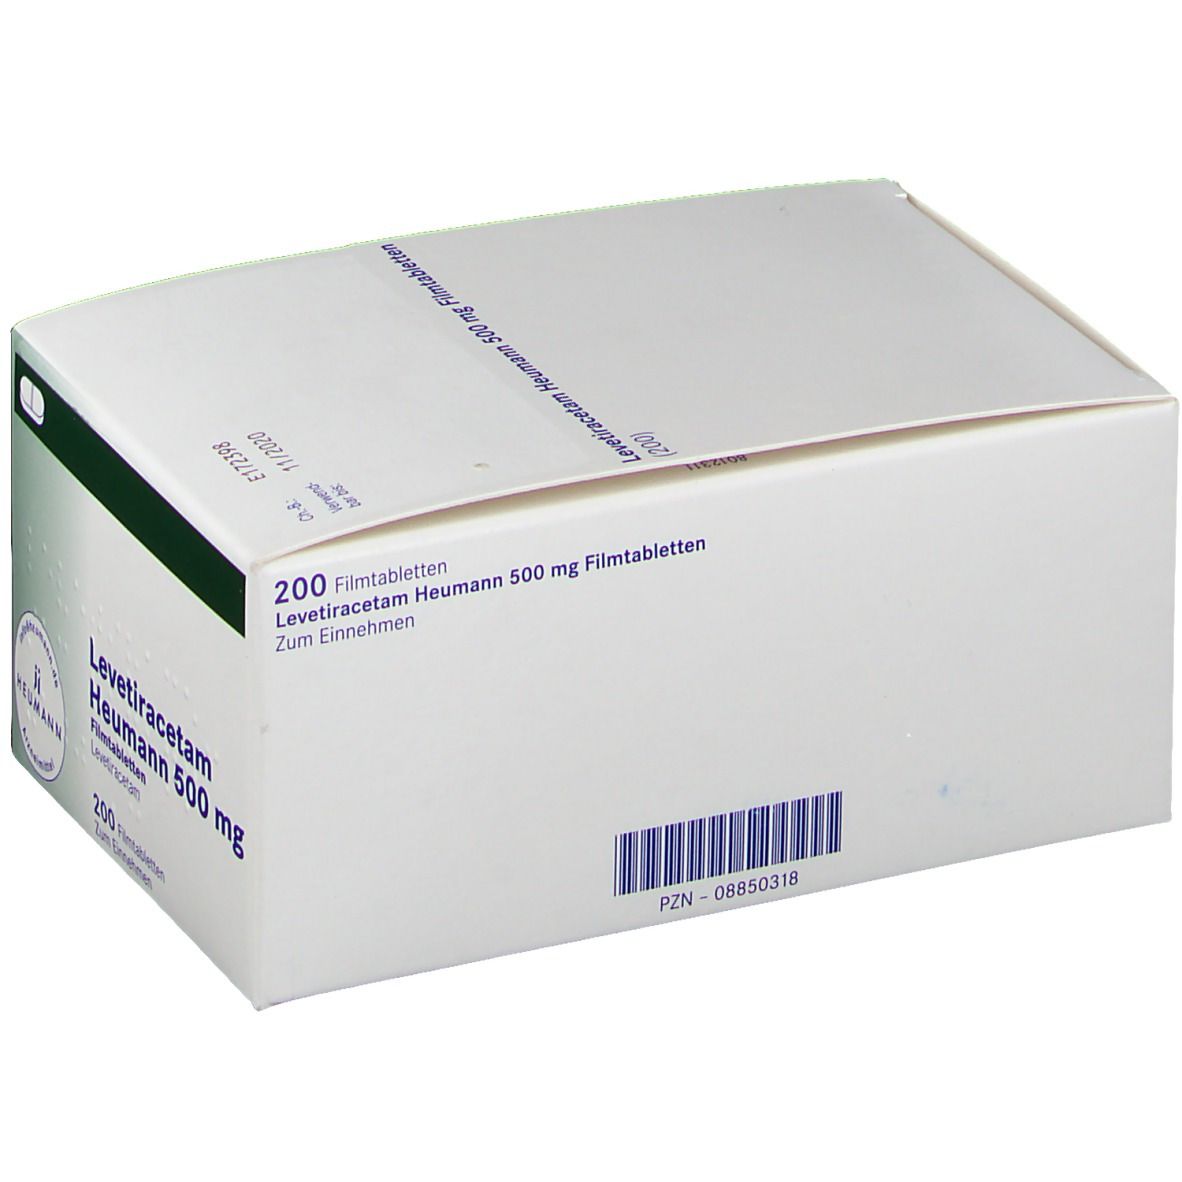 Levetiracetam Heumann 500 mg